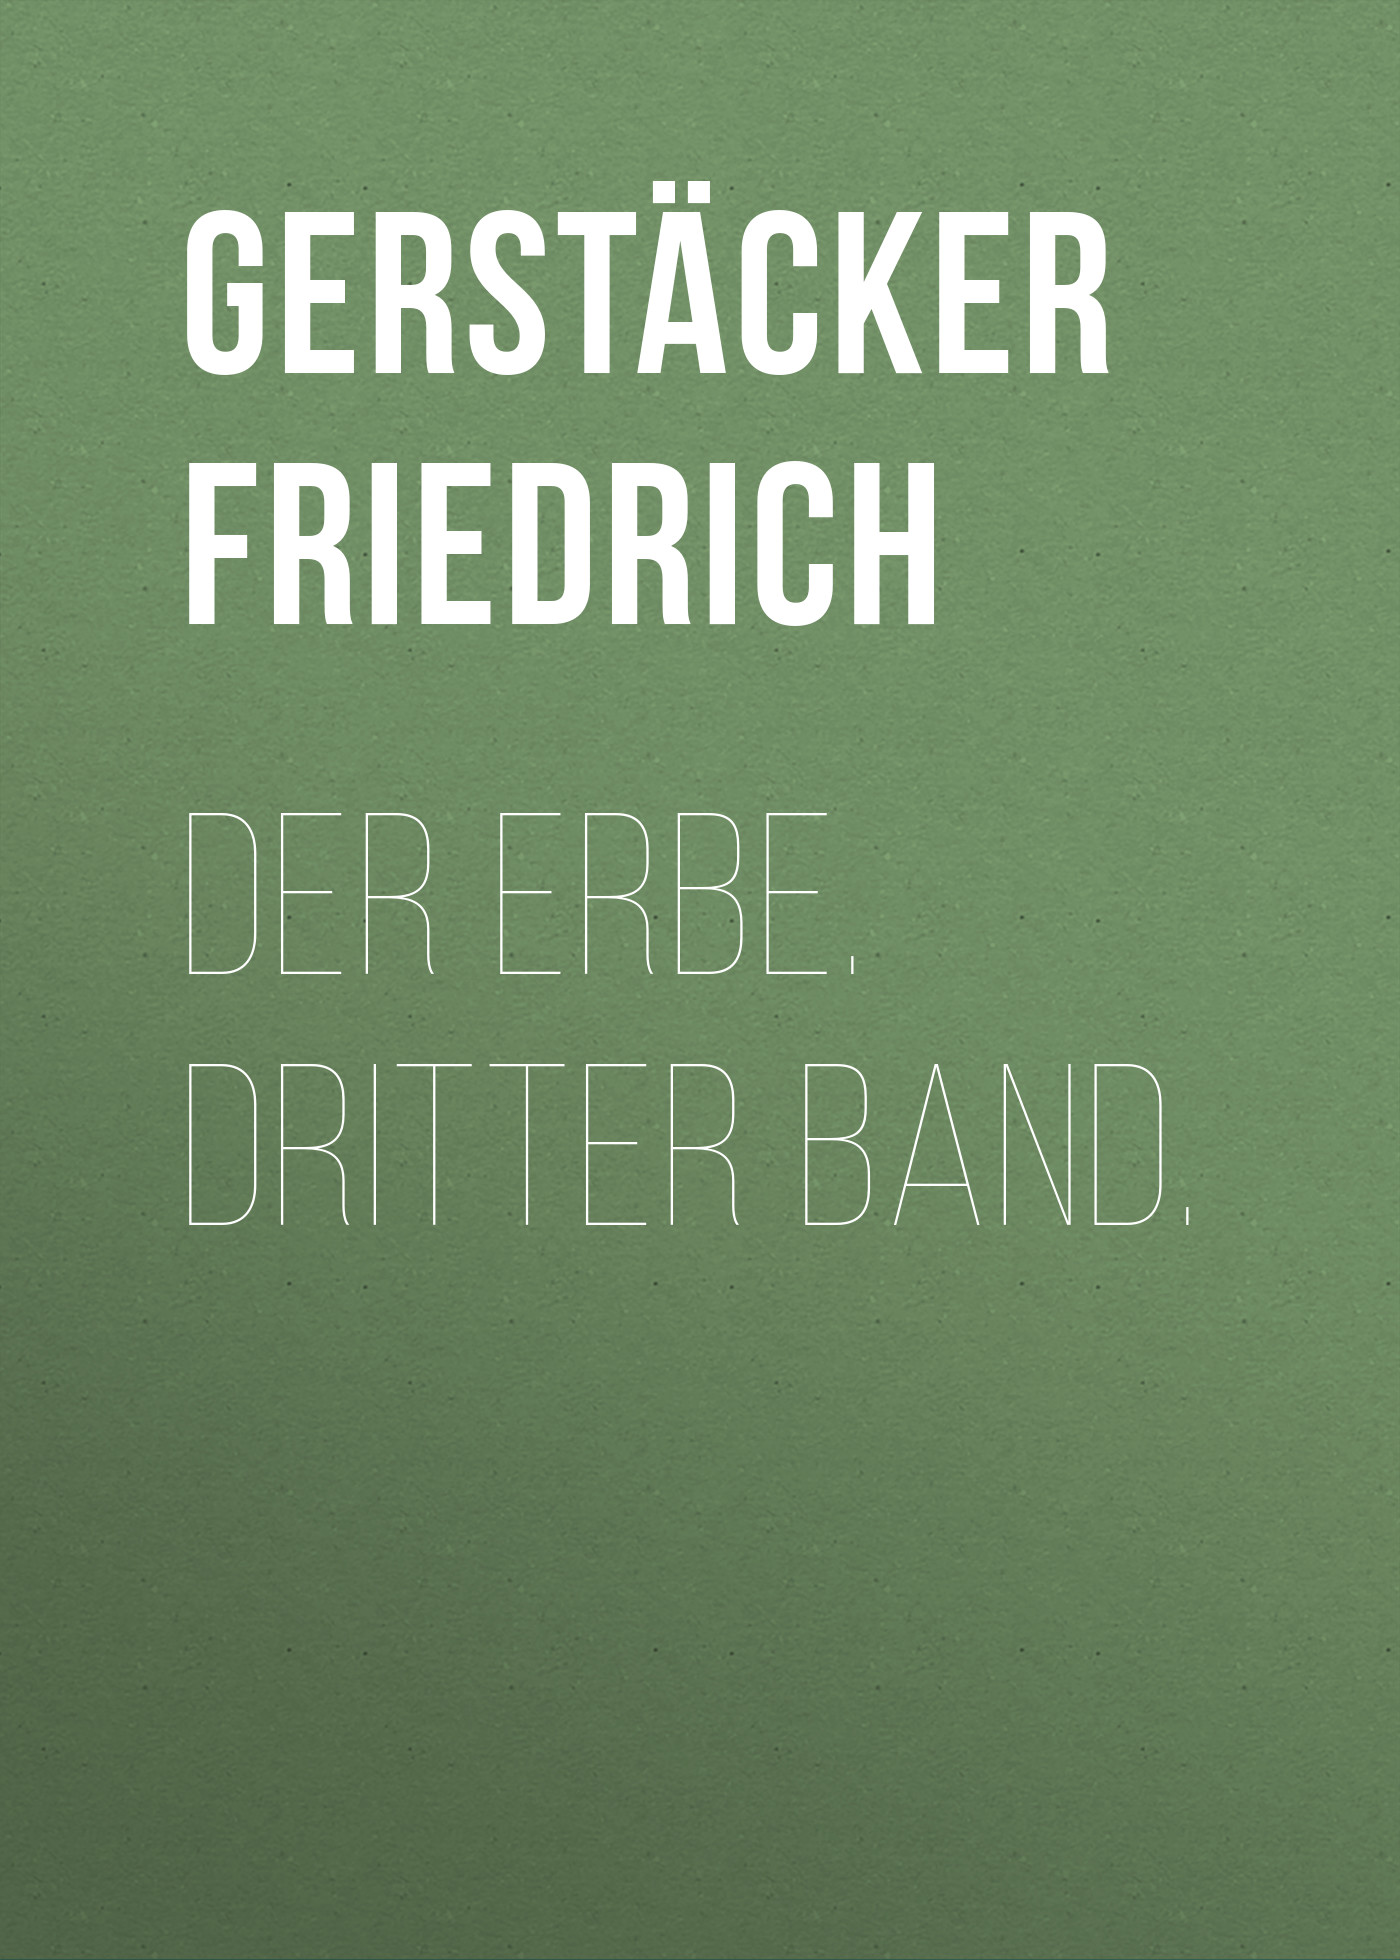 Книга Der Erbe. Dritter Band. из серии , созданная Friedrich Gerstäcker, может относится к жанру Зарубежная старинная литература, Зарубежная классика. Стоимость электронной книги Der Erbe. Dritter Band. с идентификатором 24937853 составляет 0 руб.